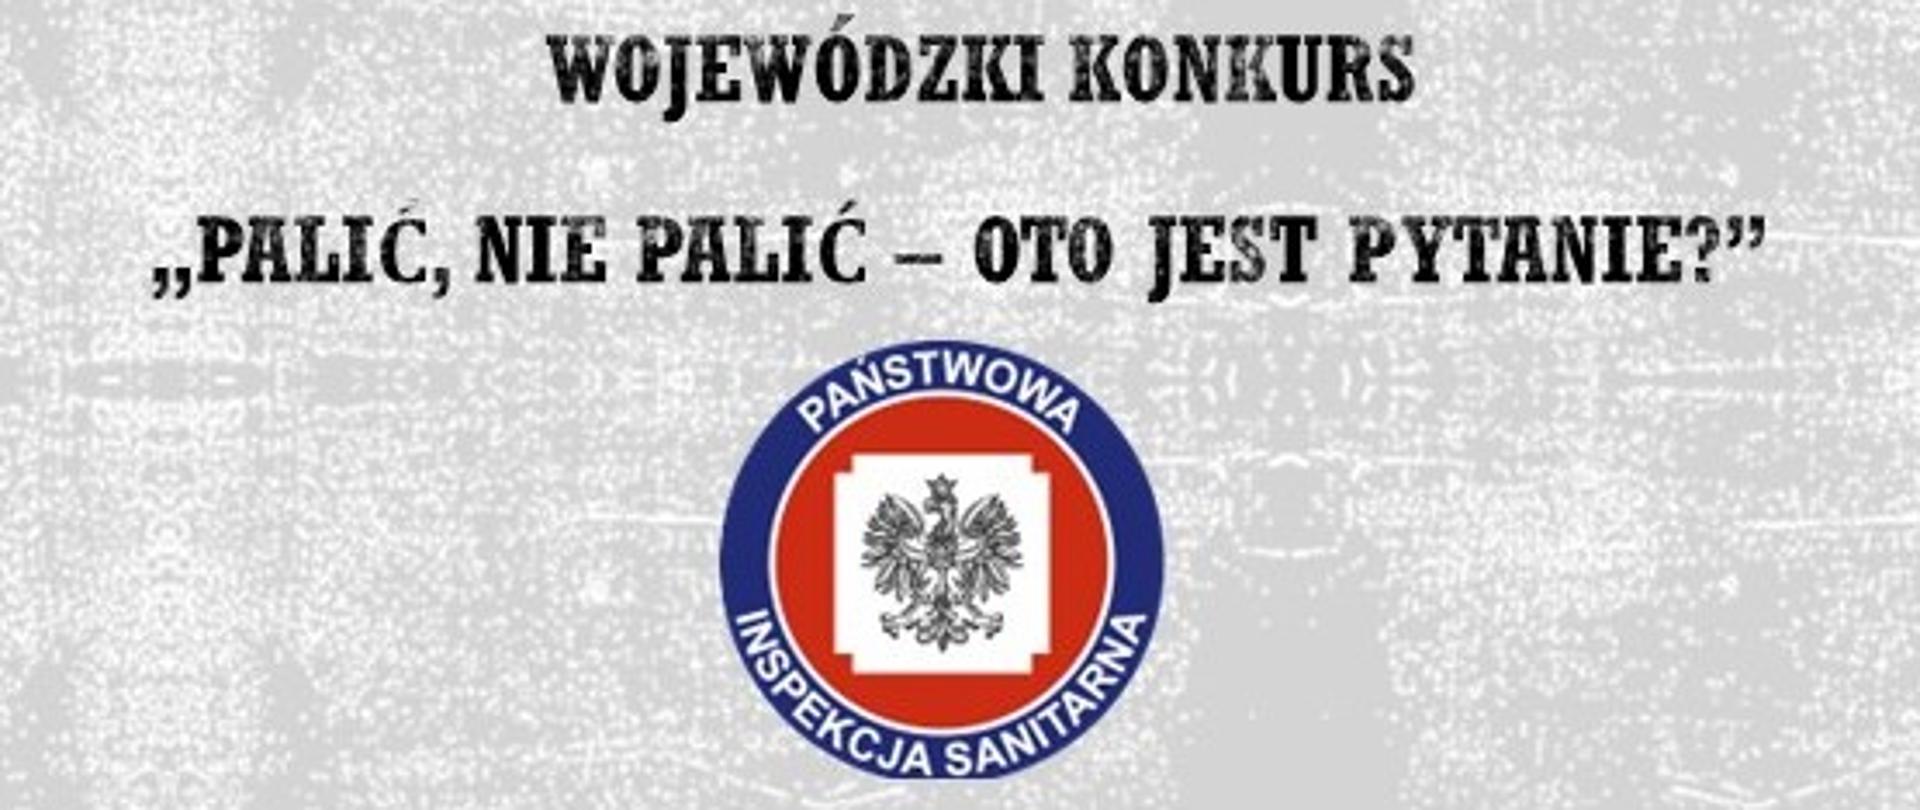 na szarym tle napis wojewódzki konkurs Palić, nie palić oto jest pytanie, pod napisem logo PIS